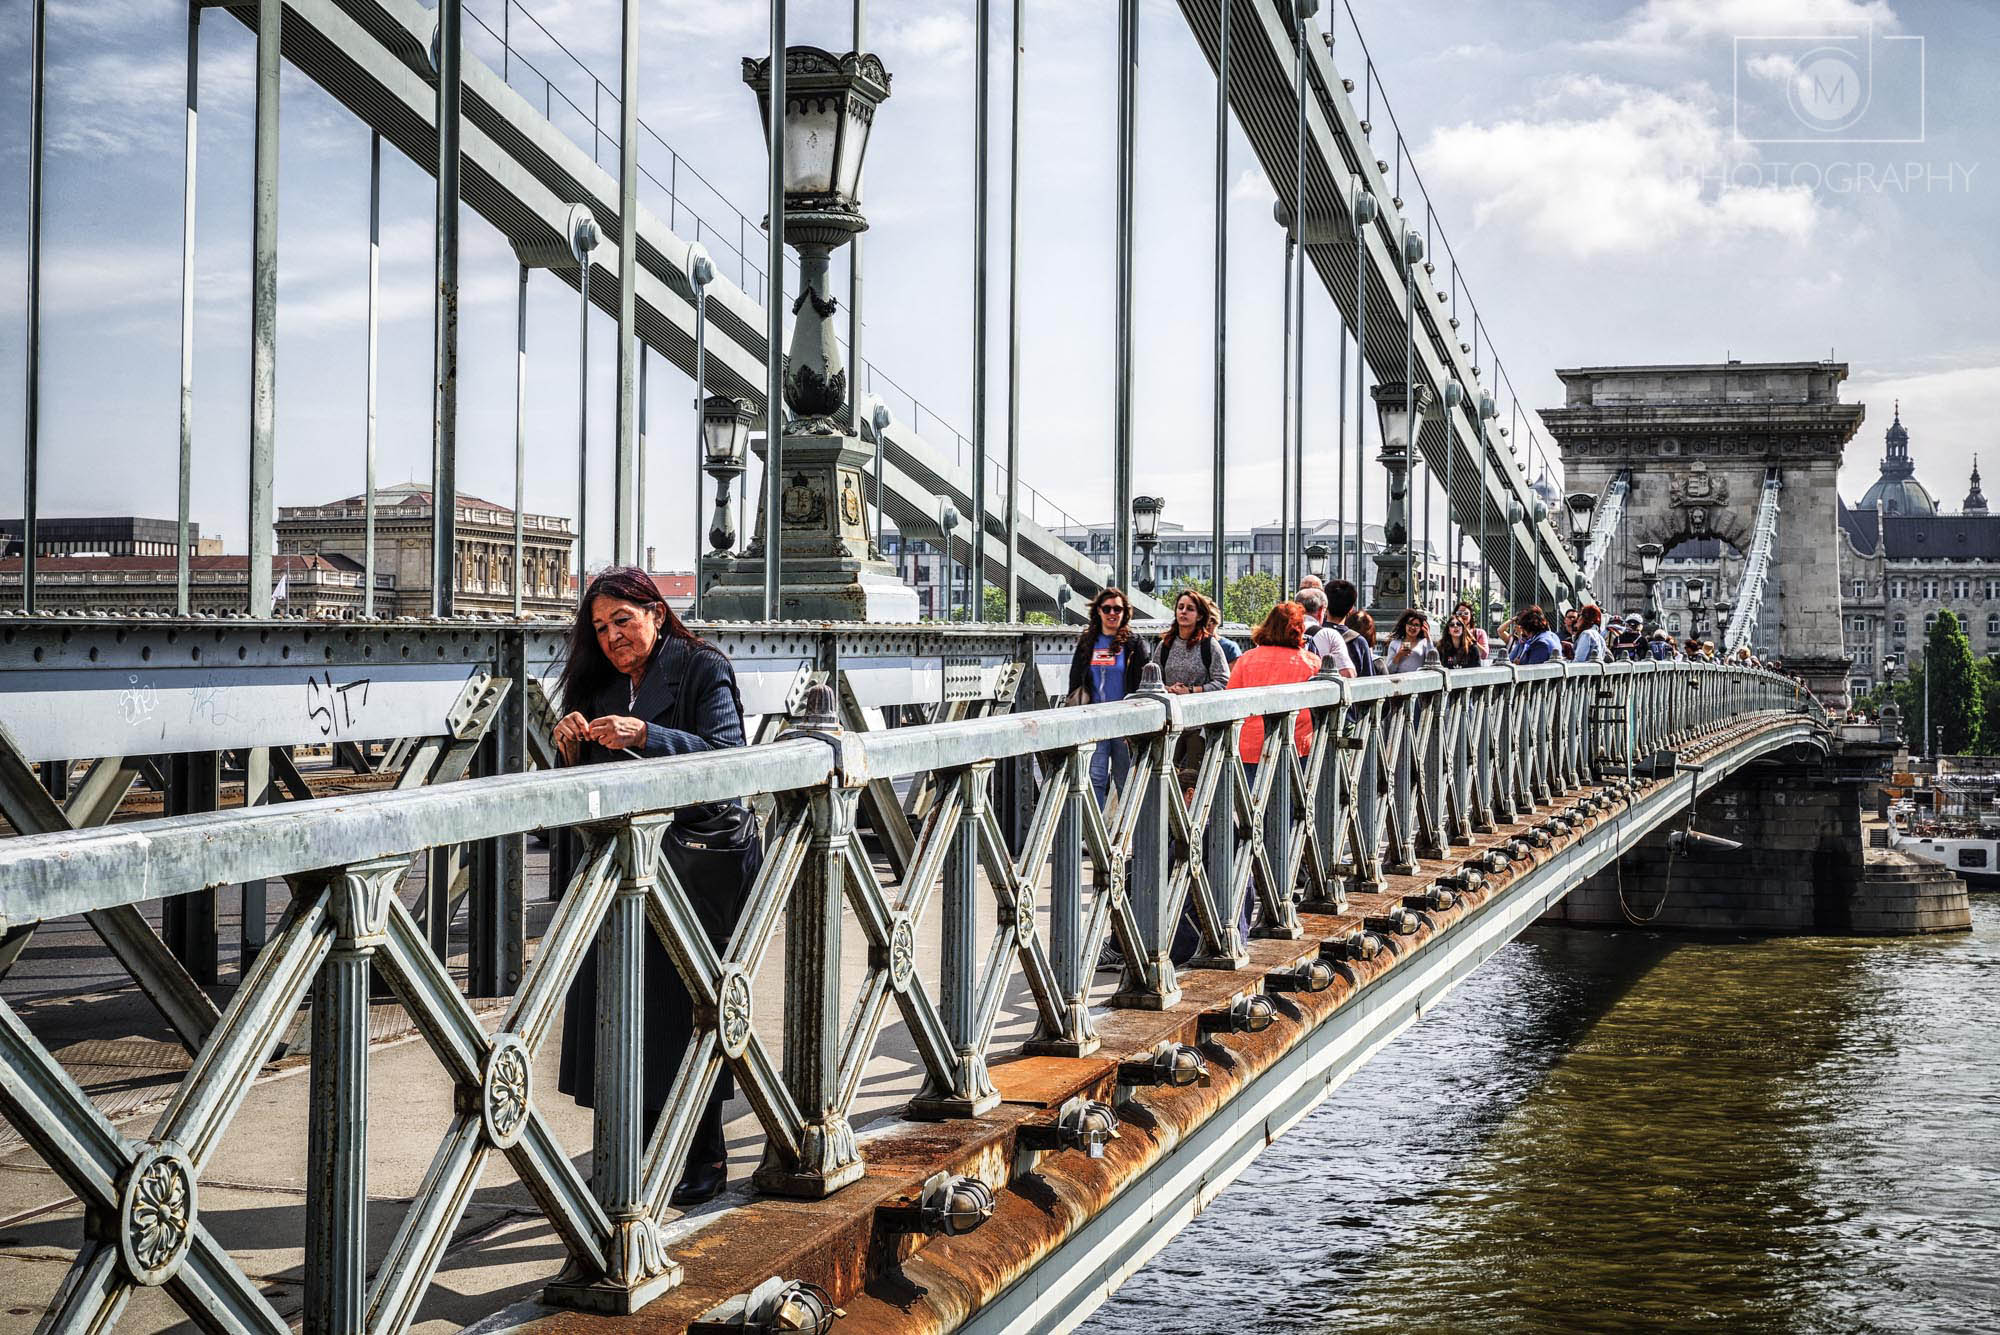 Széchenyiho reťazový most v Budapešti, Maďarsko